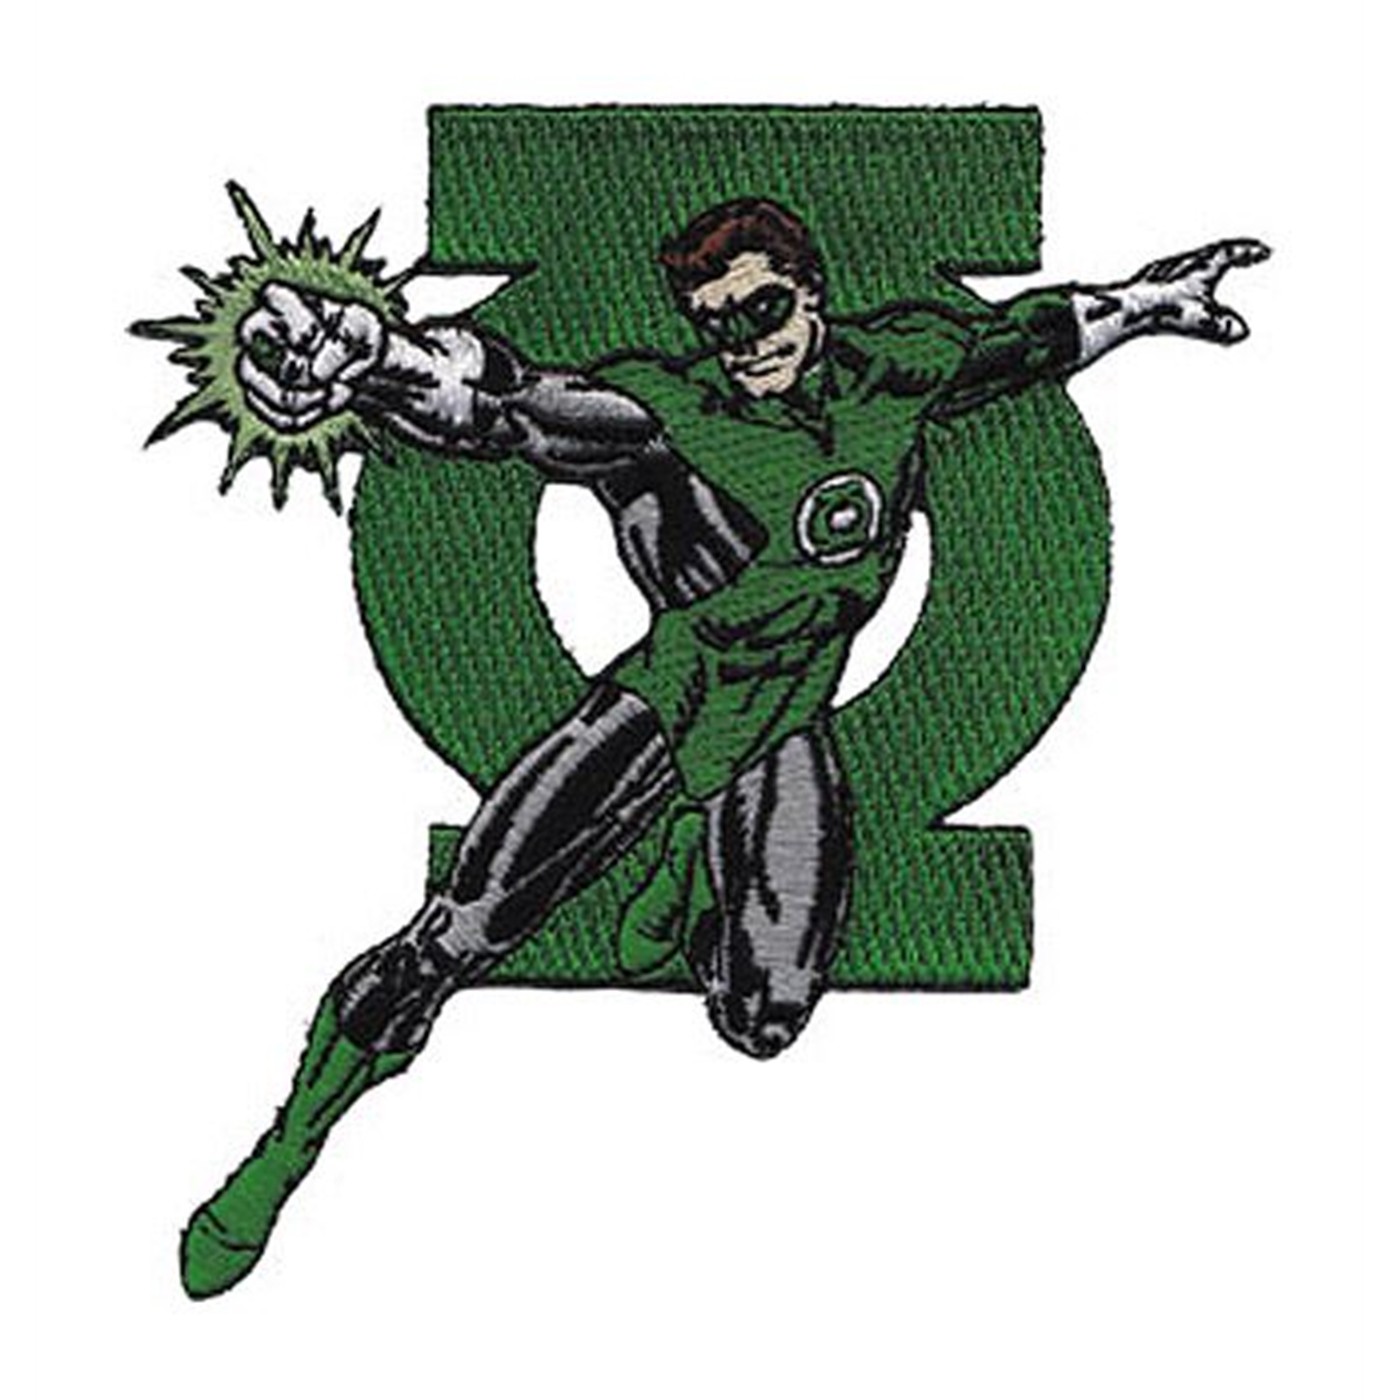 Green Lantern Flying Patch